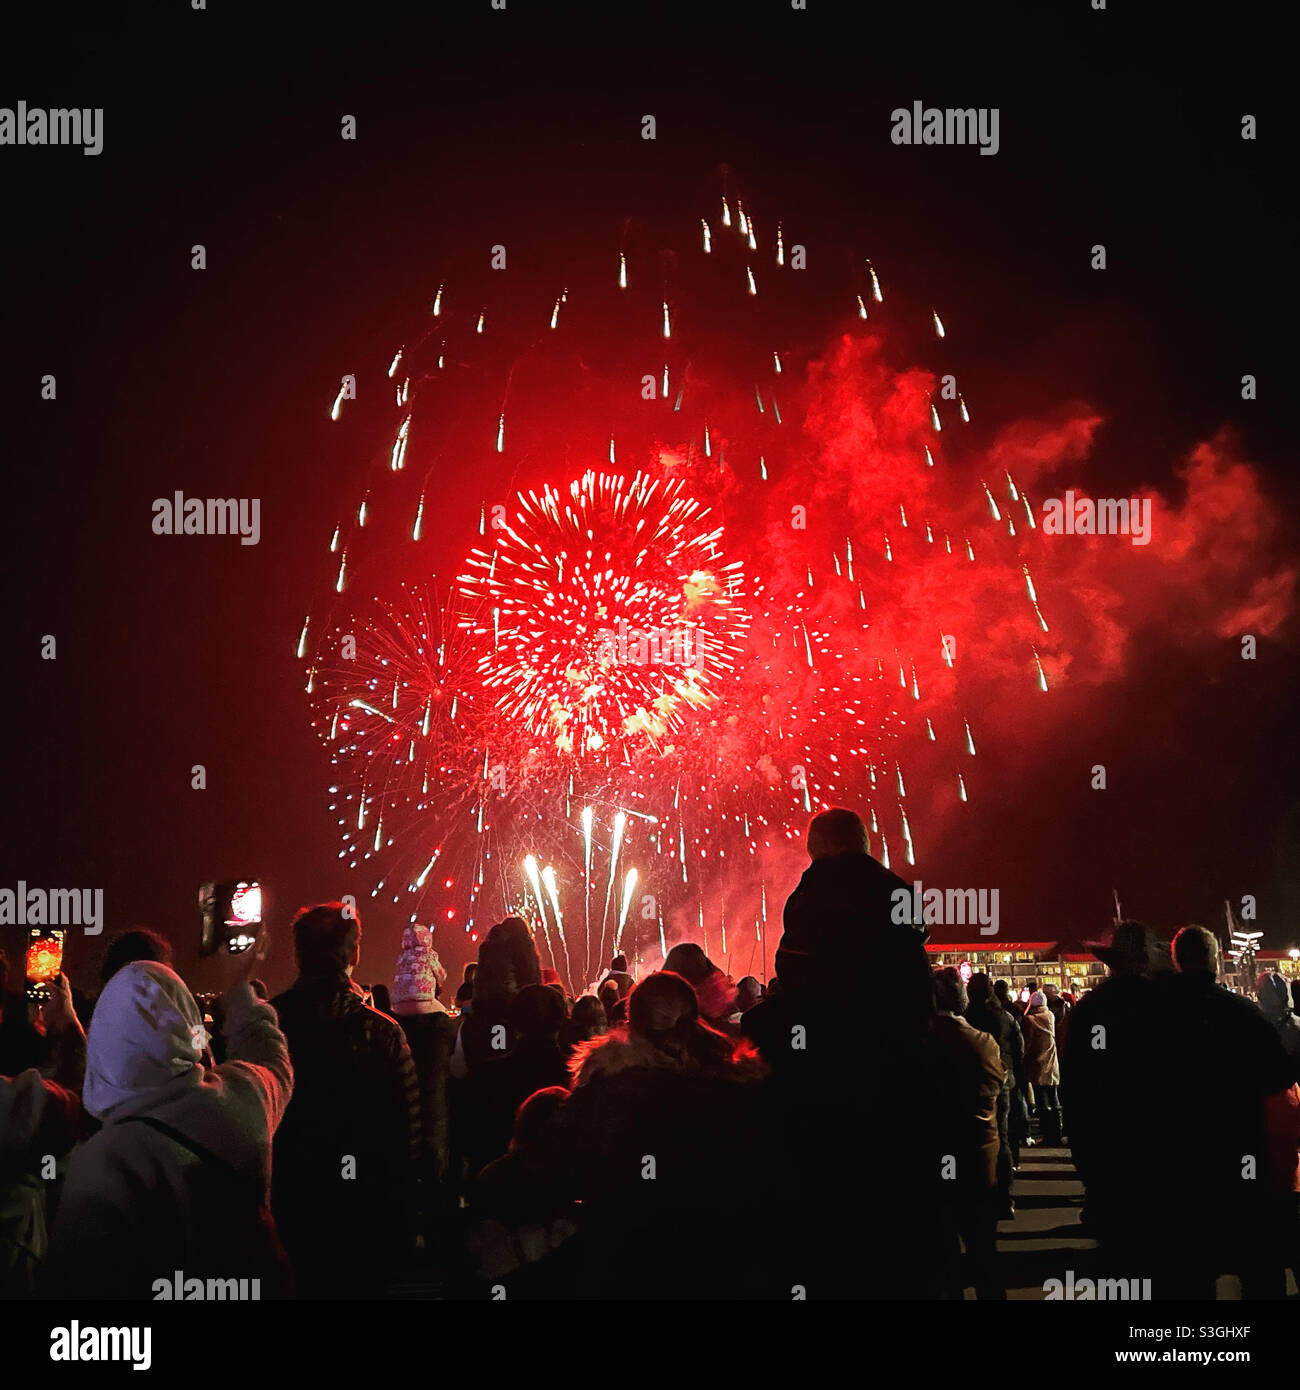 WWELLINGON, NEUSEELAND, Juni 9: Matariki-Feuerwerk im Winter an der Uferpromenade von Wellington. Stockfoto